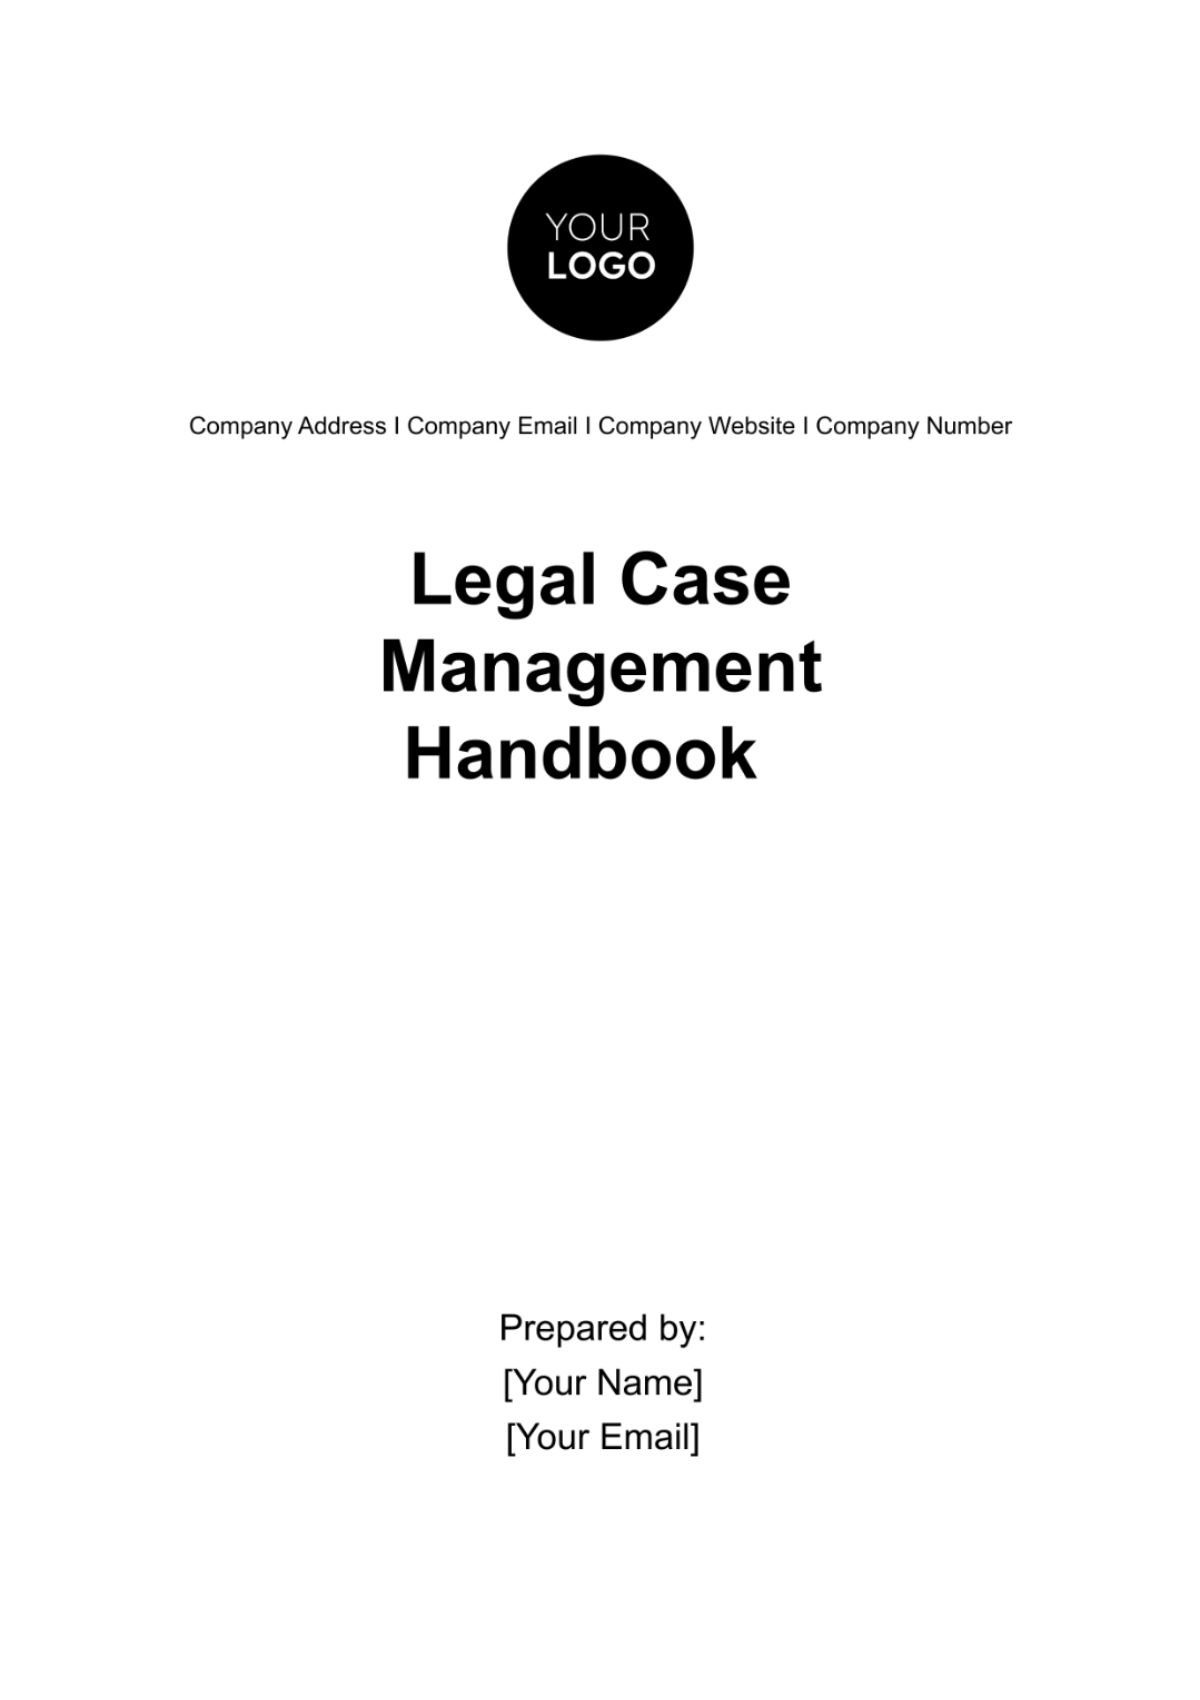 Legal Case Management Handbook Template